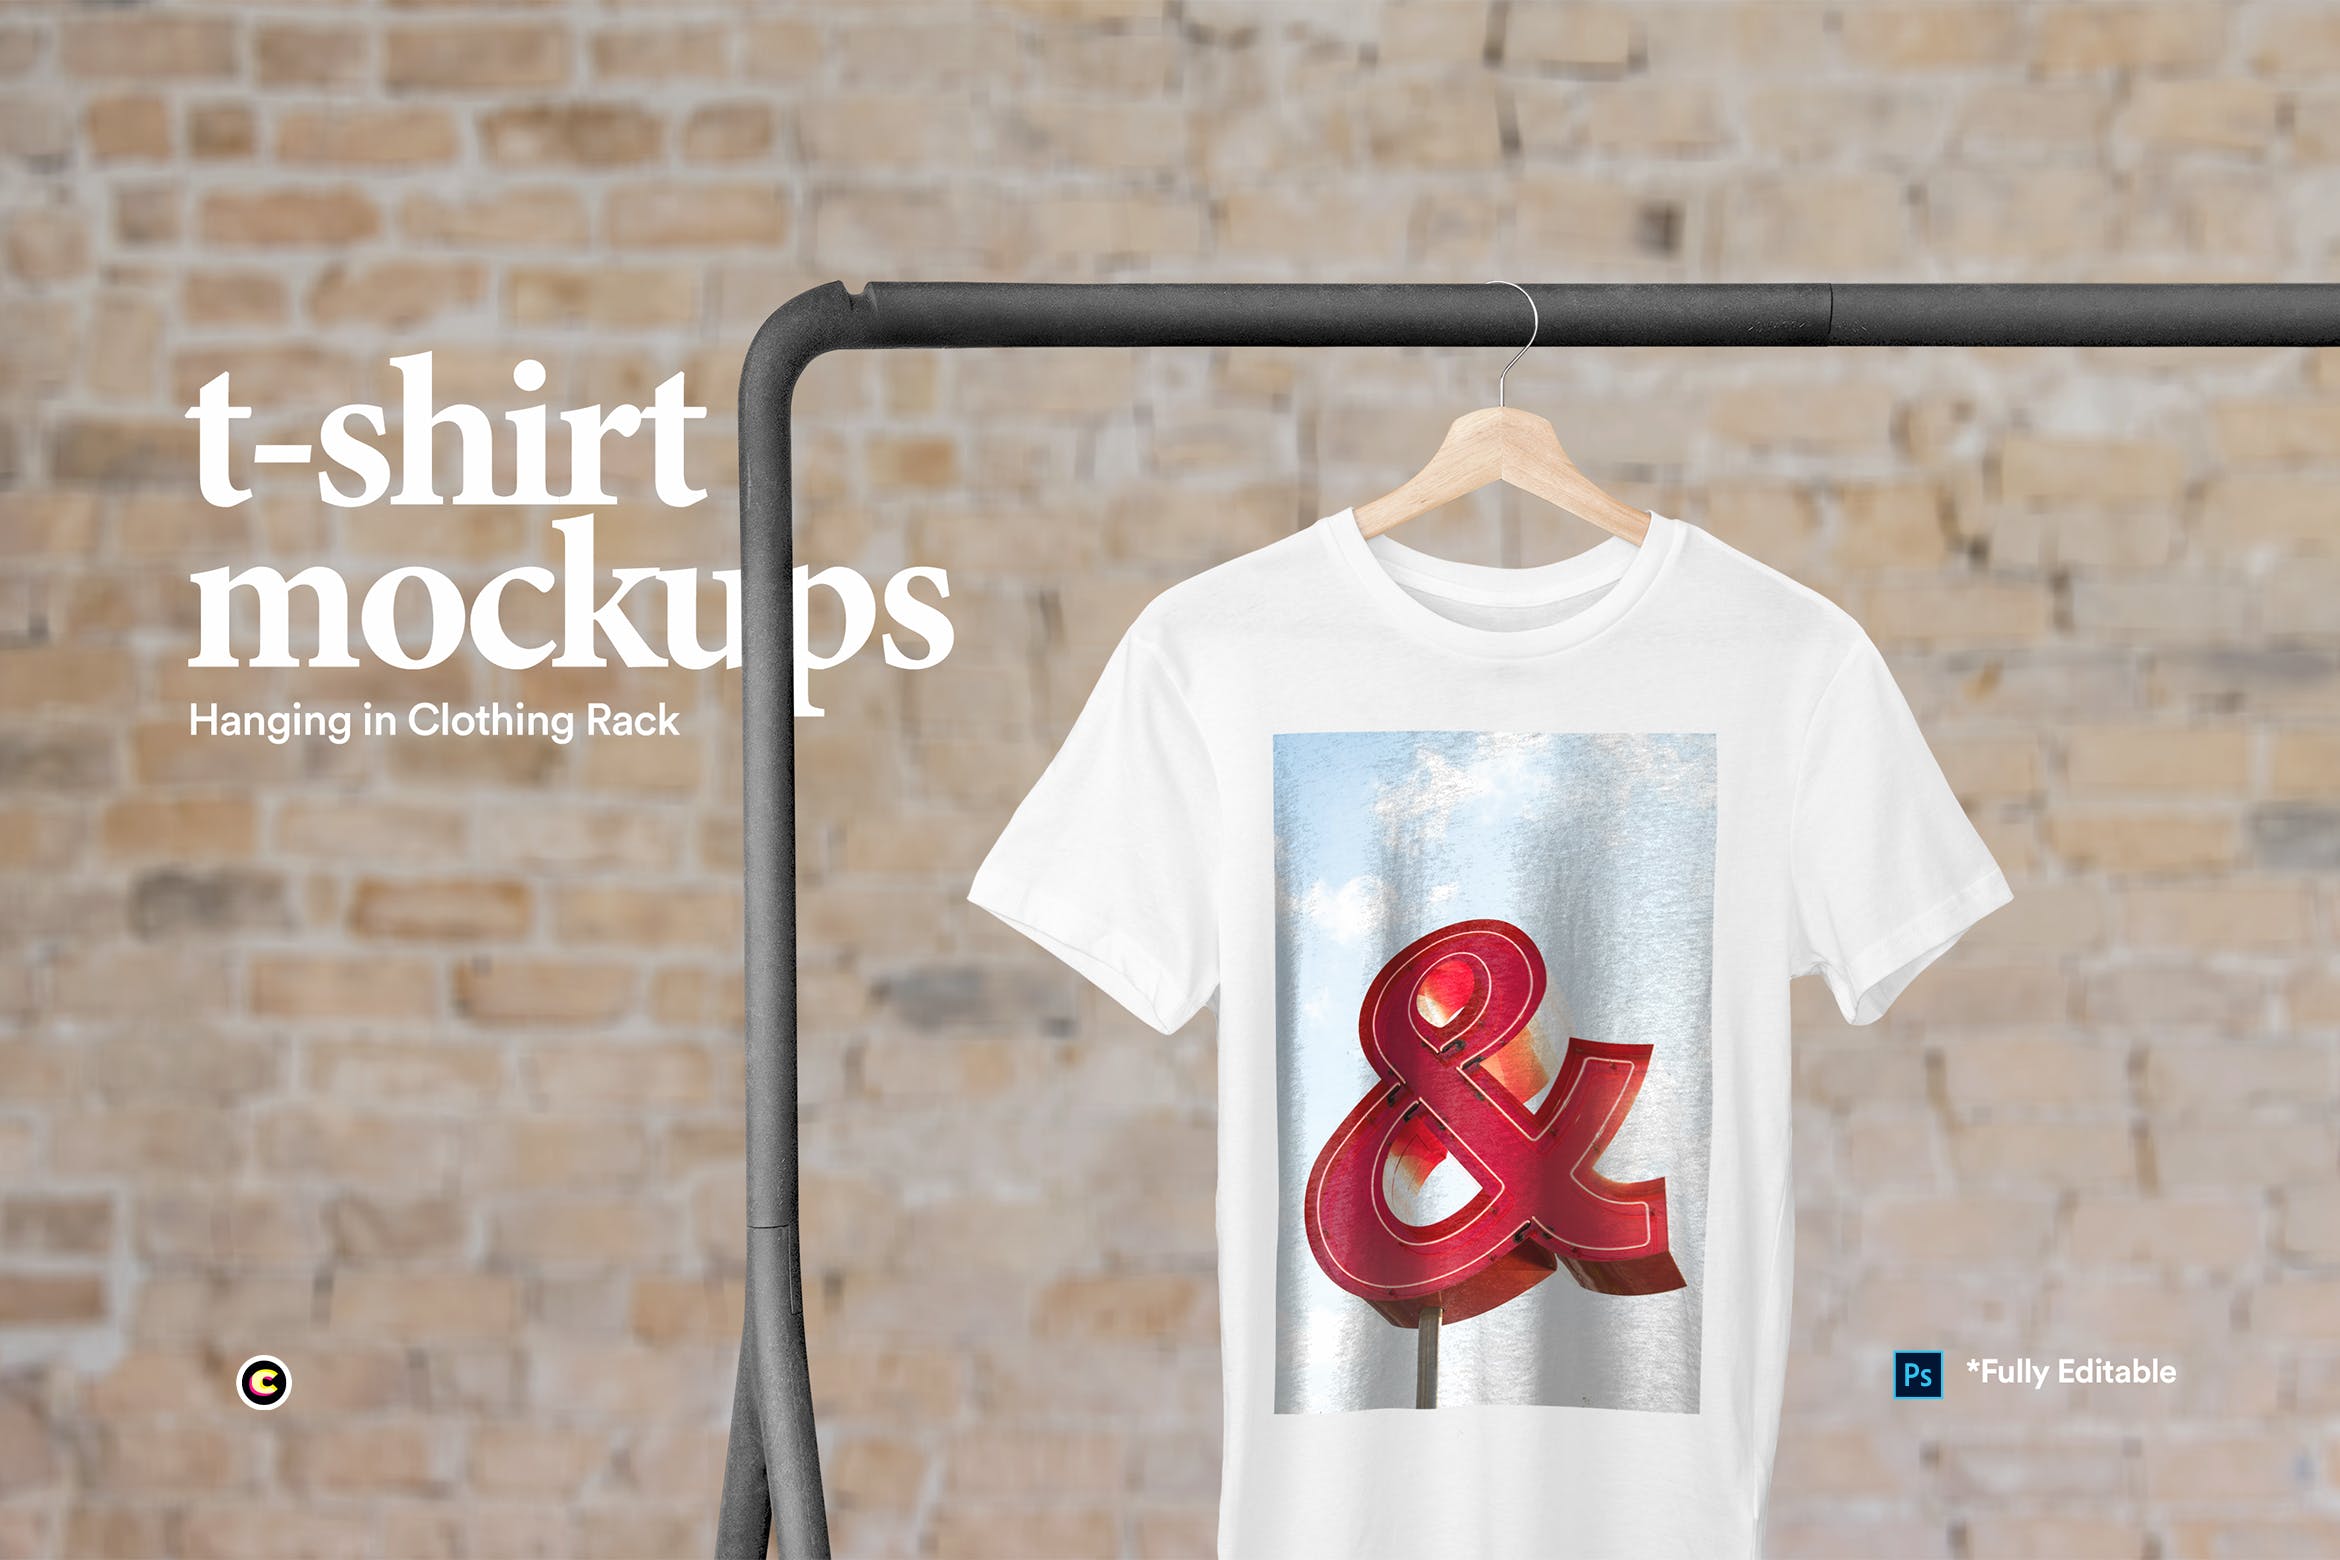 晾晒状态T恤产品展示样机第一素材精选模板 Hanging T-Shirt Mockup插图